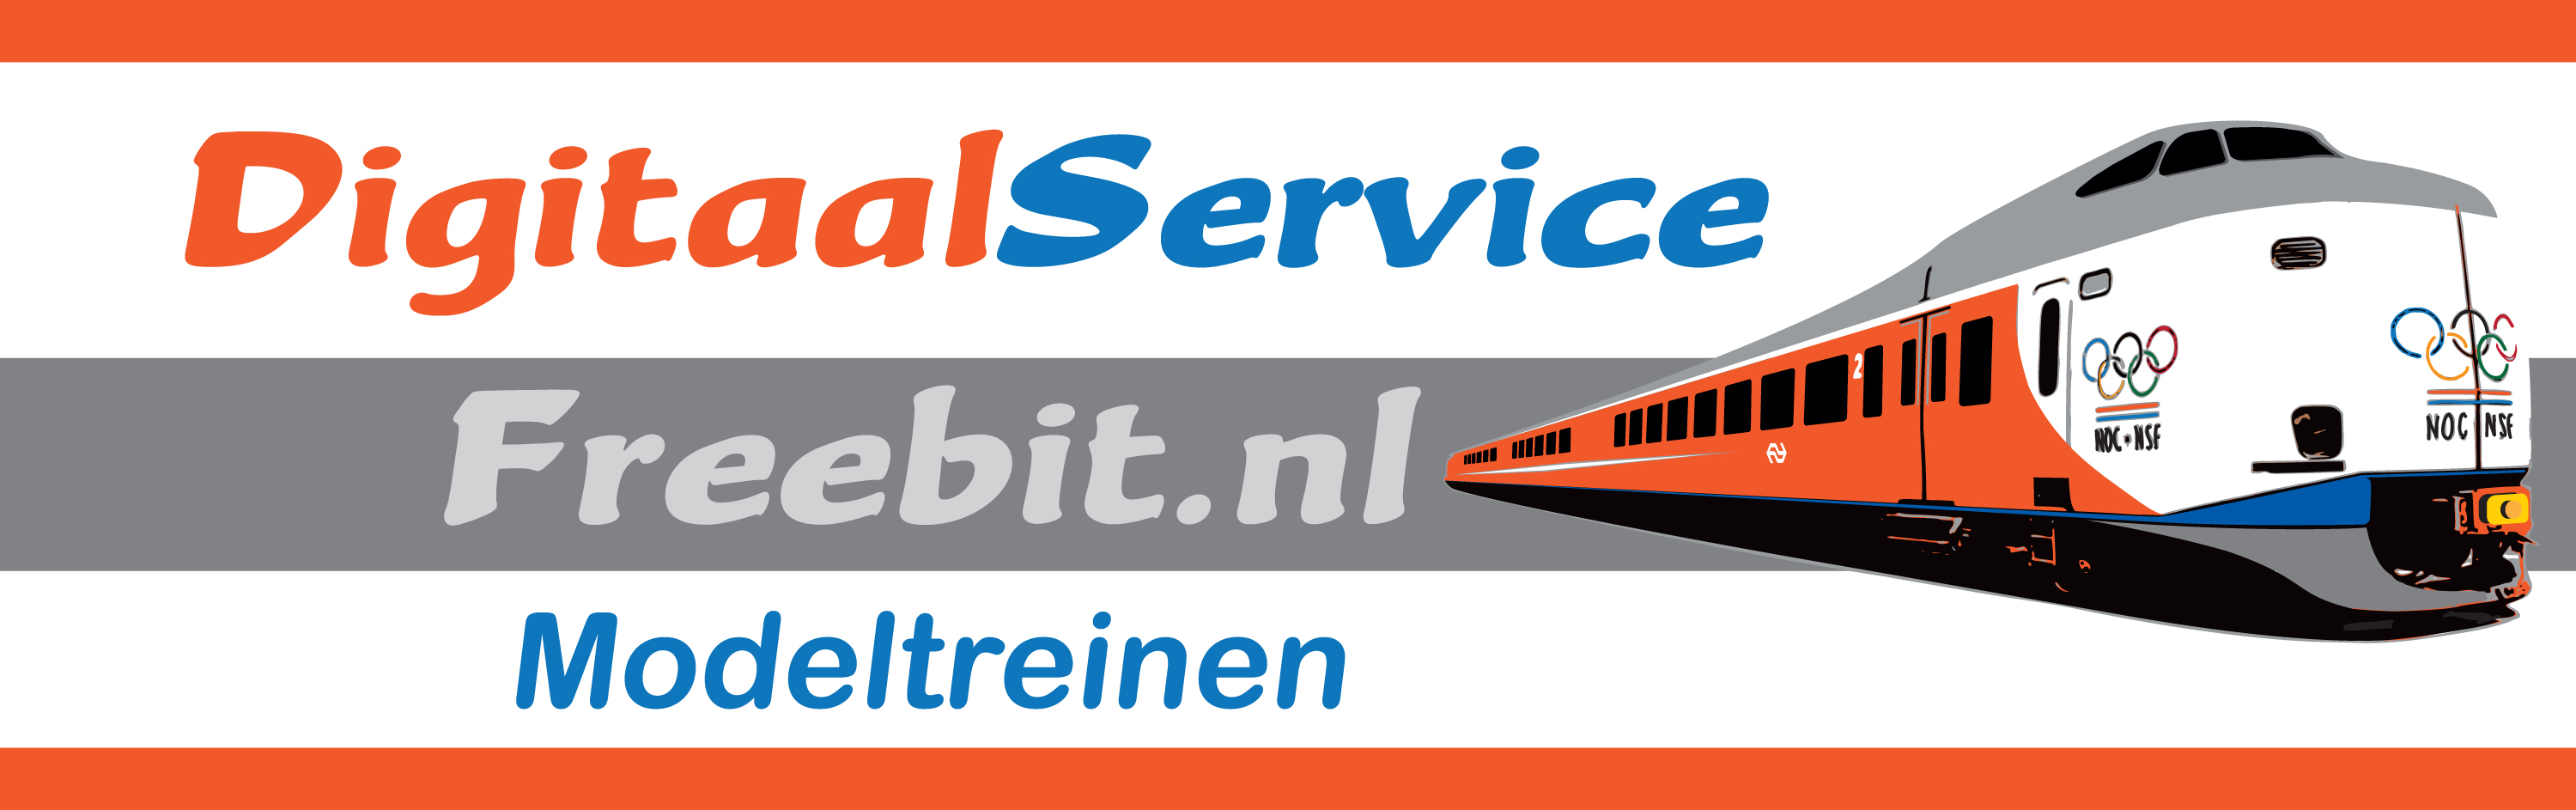 2018-Logo-Freebit-Digitaal-Service.jpg